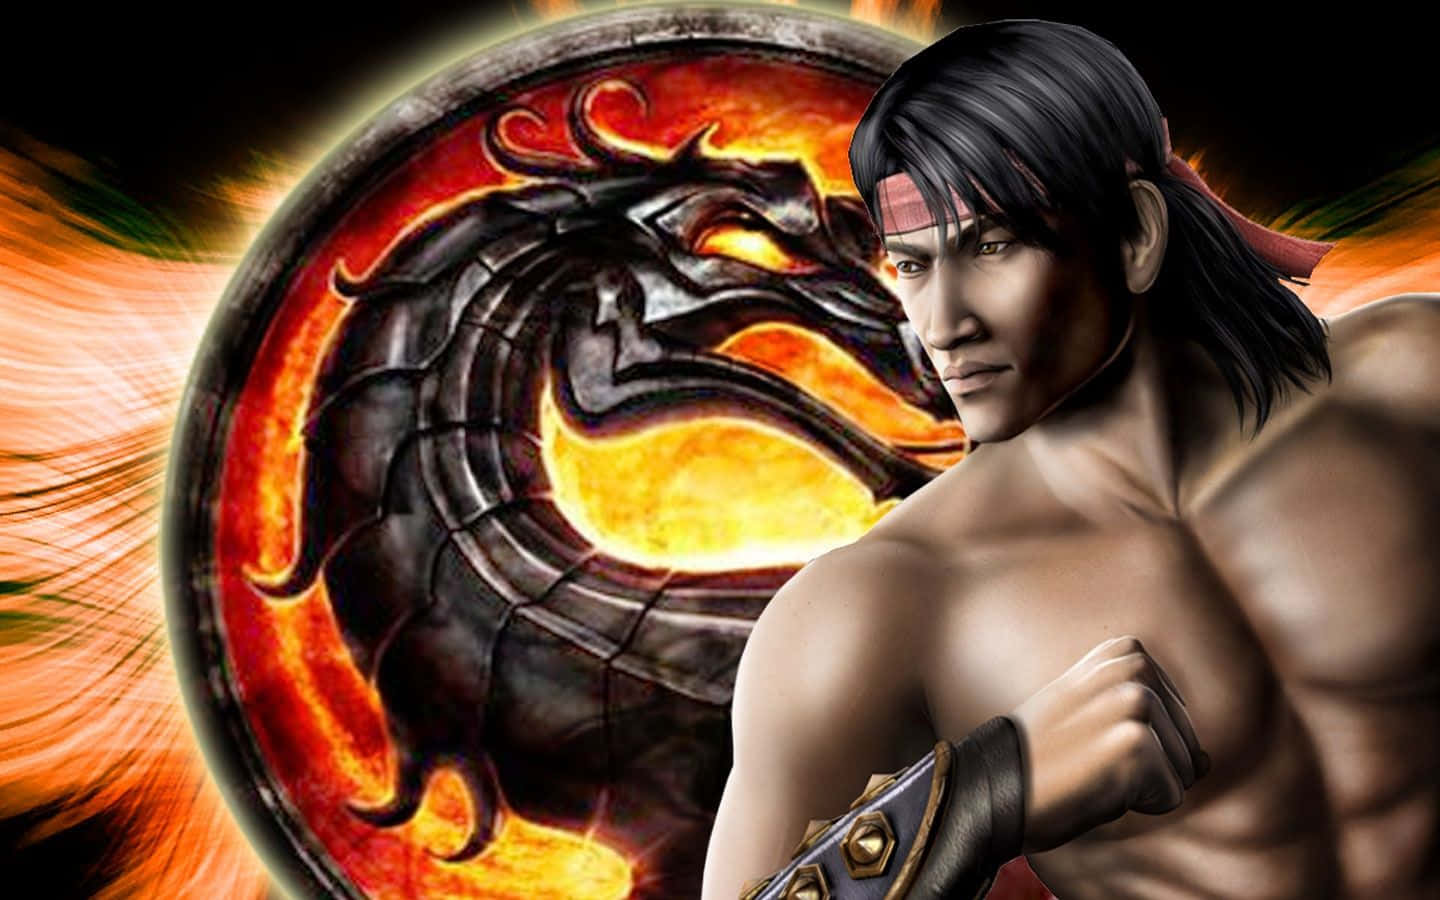 Liu Kang unleashing his power in Mortal Kombat Wallpaper